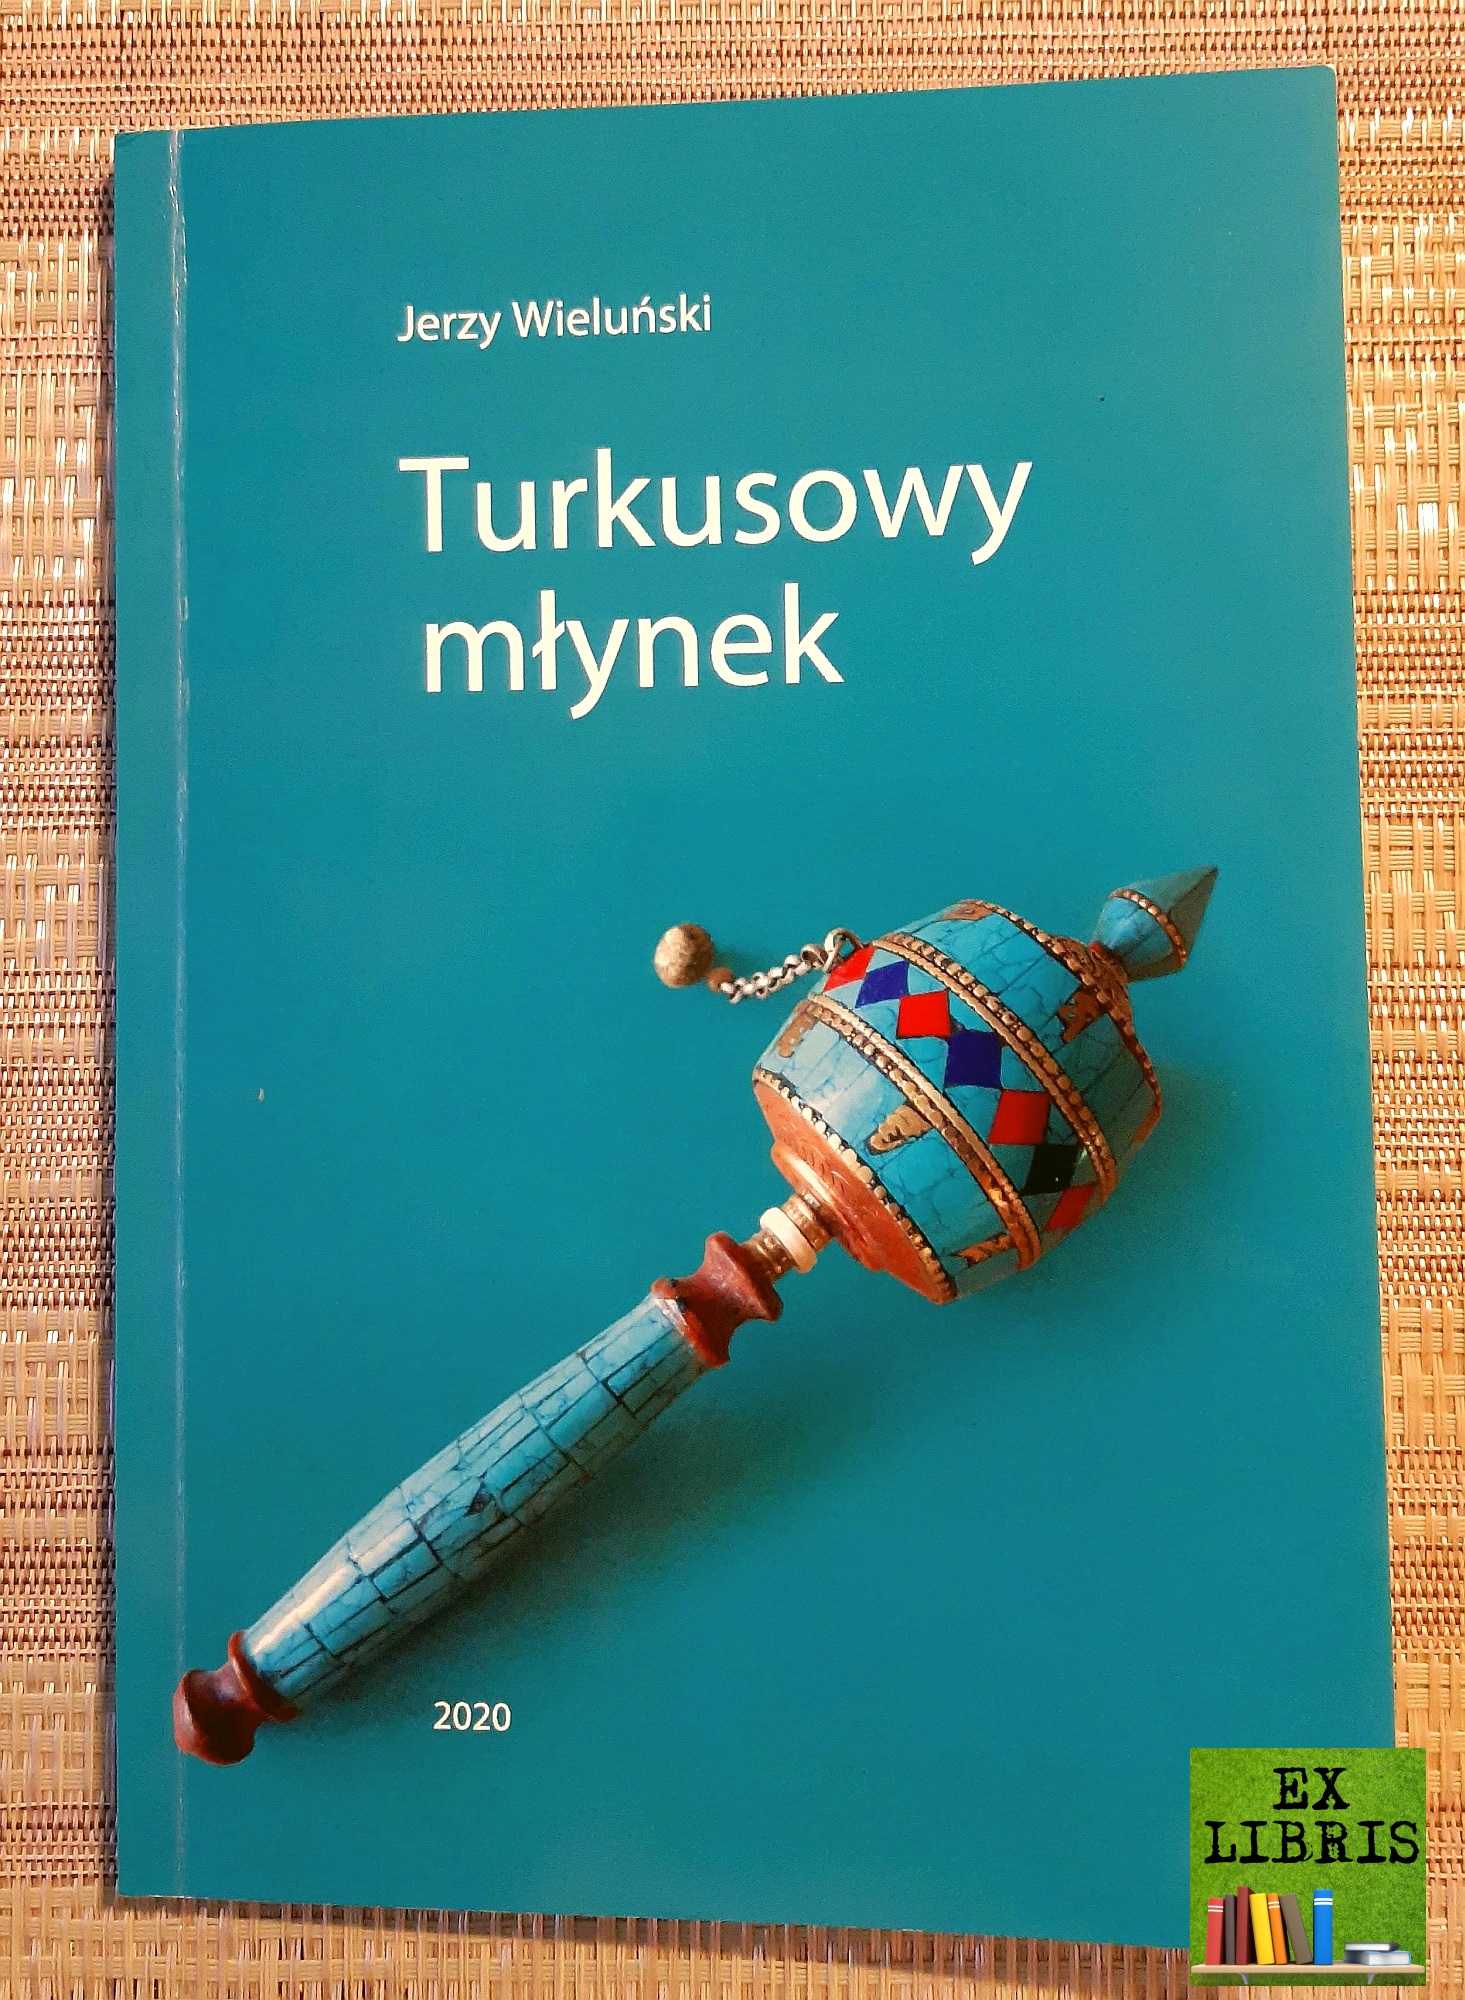 Jerzy Wieluski: Turkusowy mynek, Bydgoszcz 2020, 113 s., il.